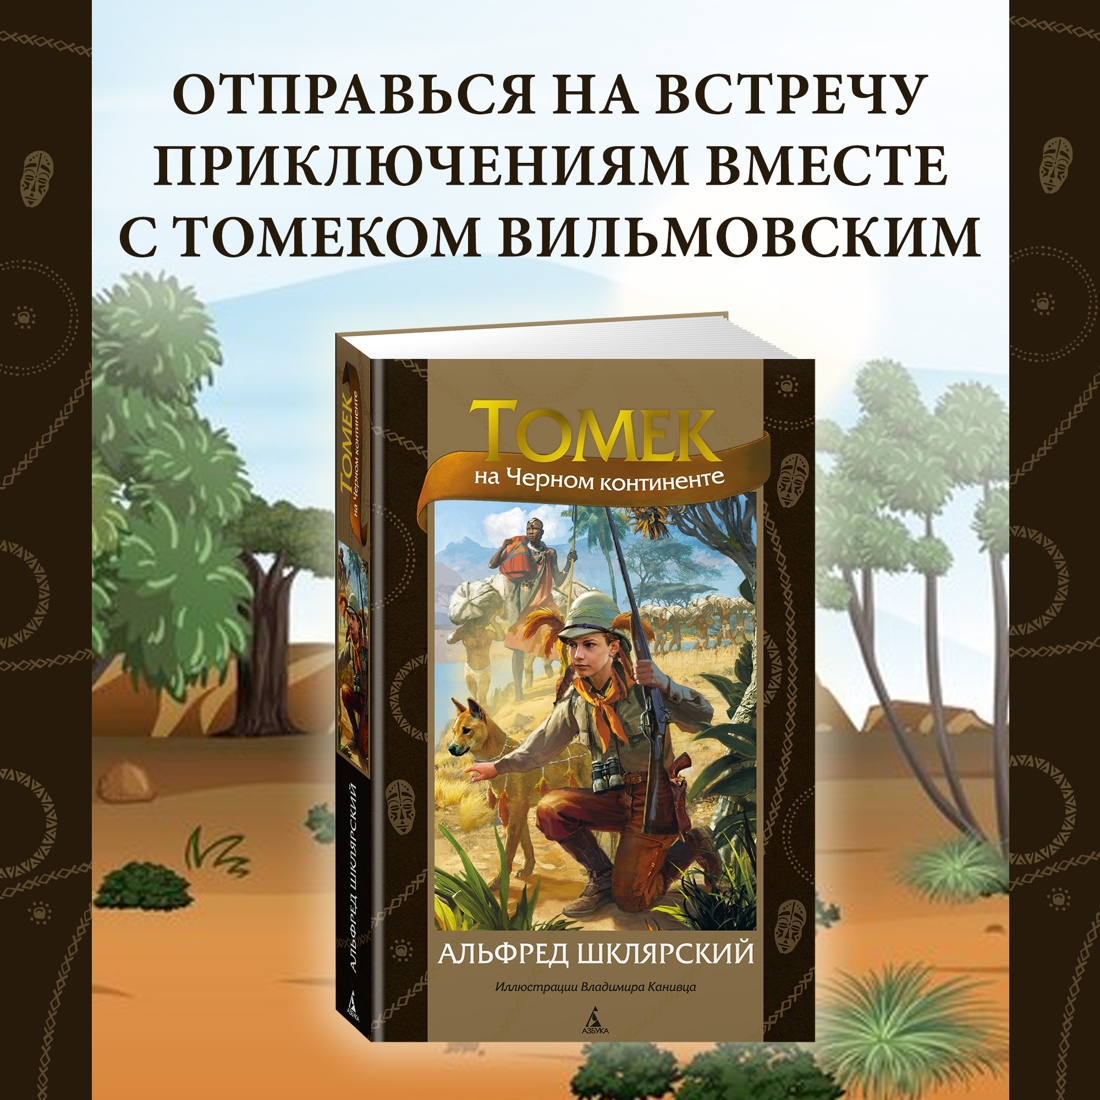 Промо материал к книге "Томек на Черном континенте" №0